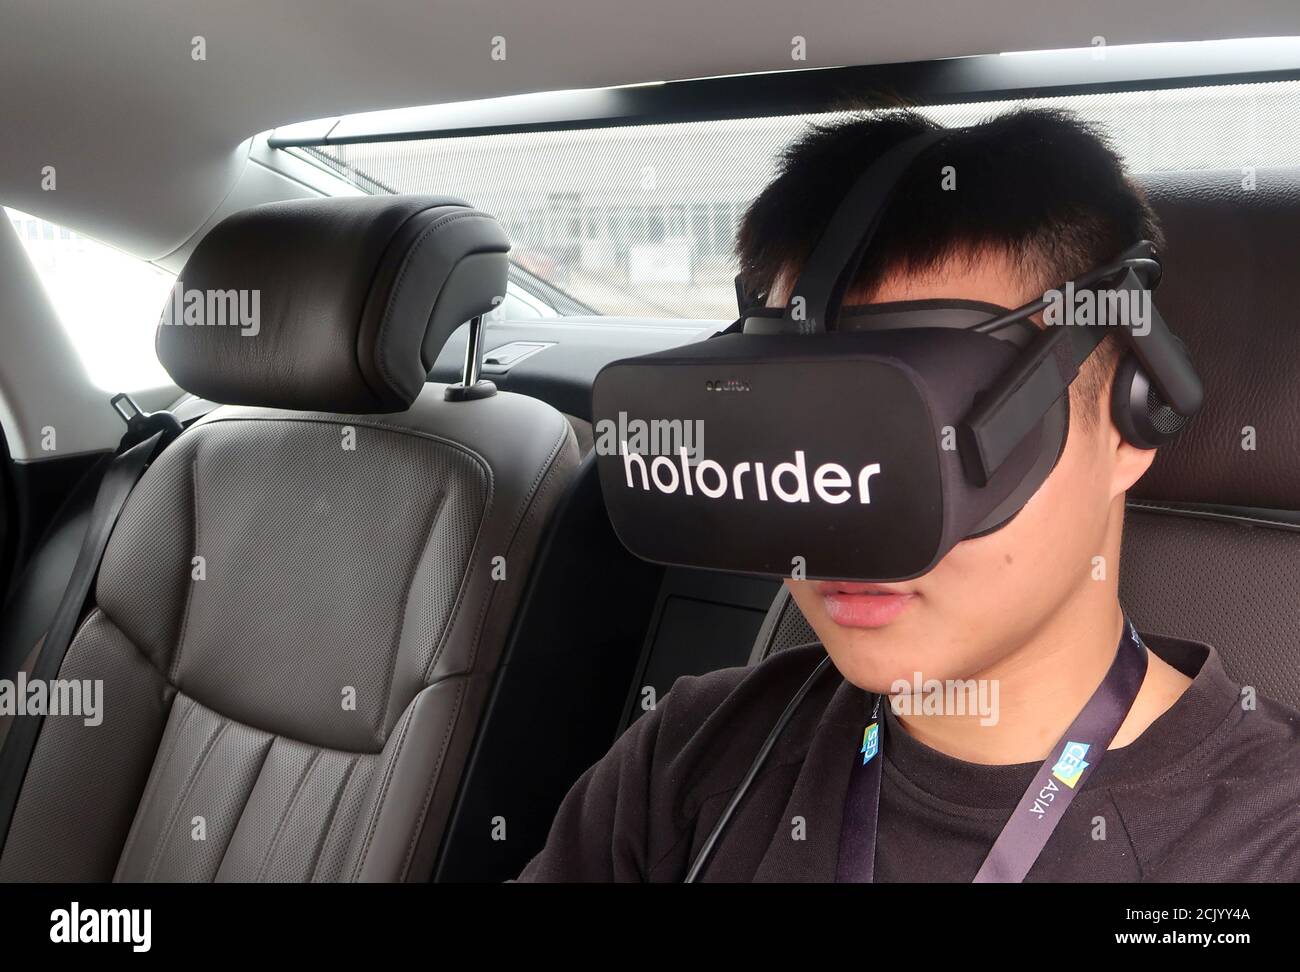 Ein Mitarbeiter trägt eine Holoride Virtual Reality (VR) Brille in einem  Audi Fahrzeug während einer Demonstration